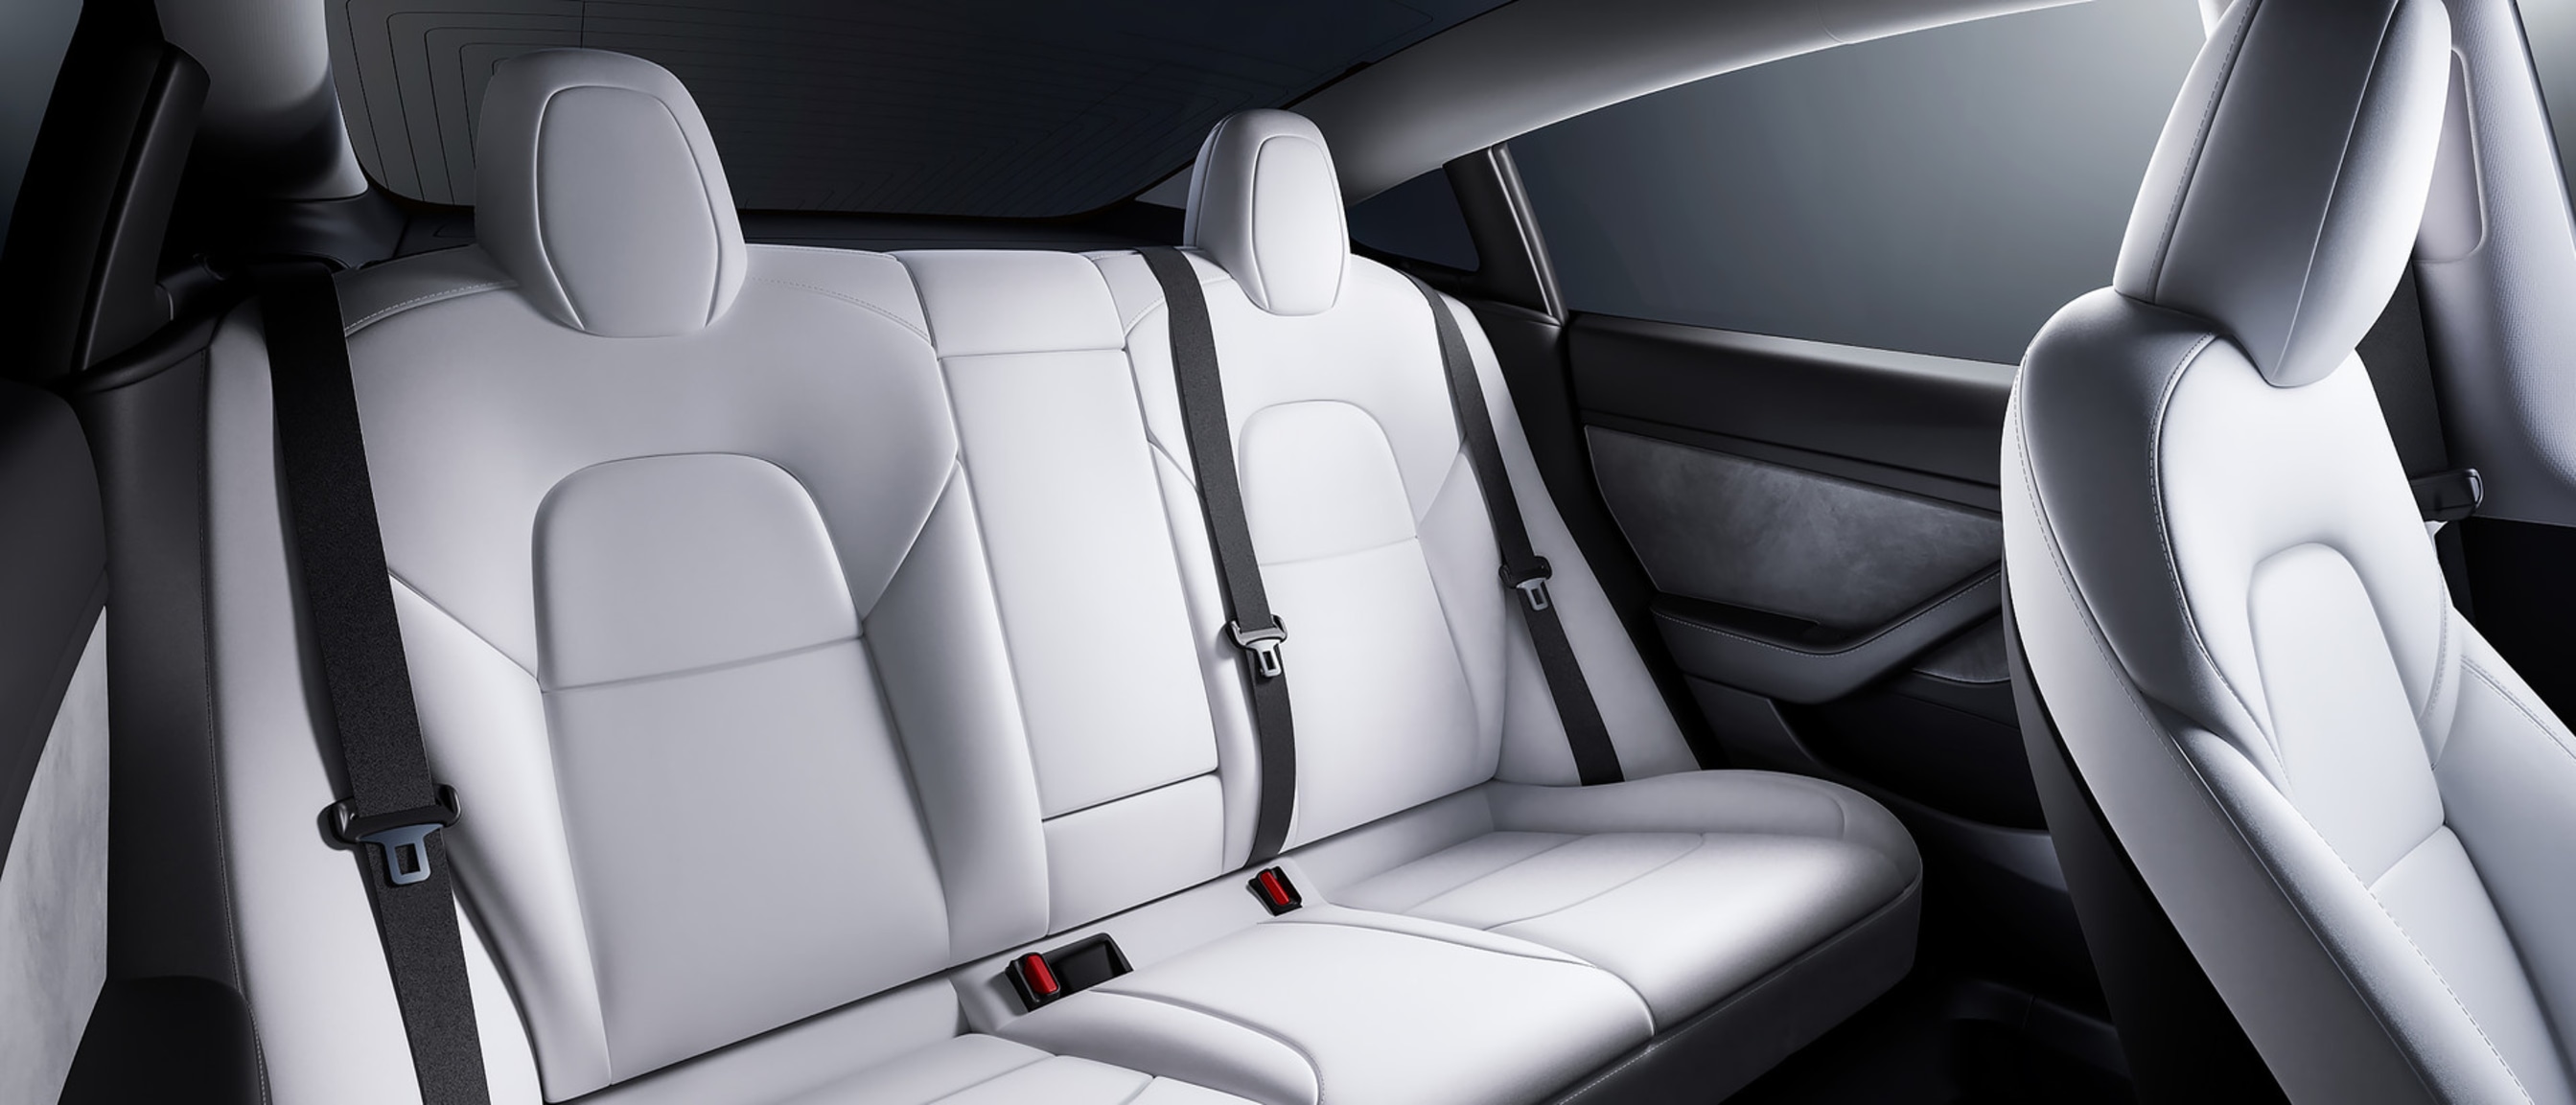 Prikaz prostranih stražnjih sjedala u vozilu Model 3 u kojem je unutrašnjost bijele boje